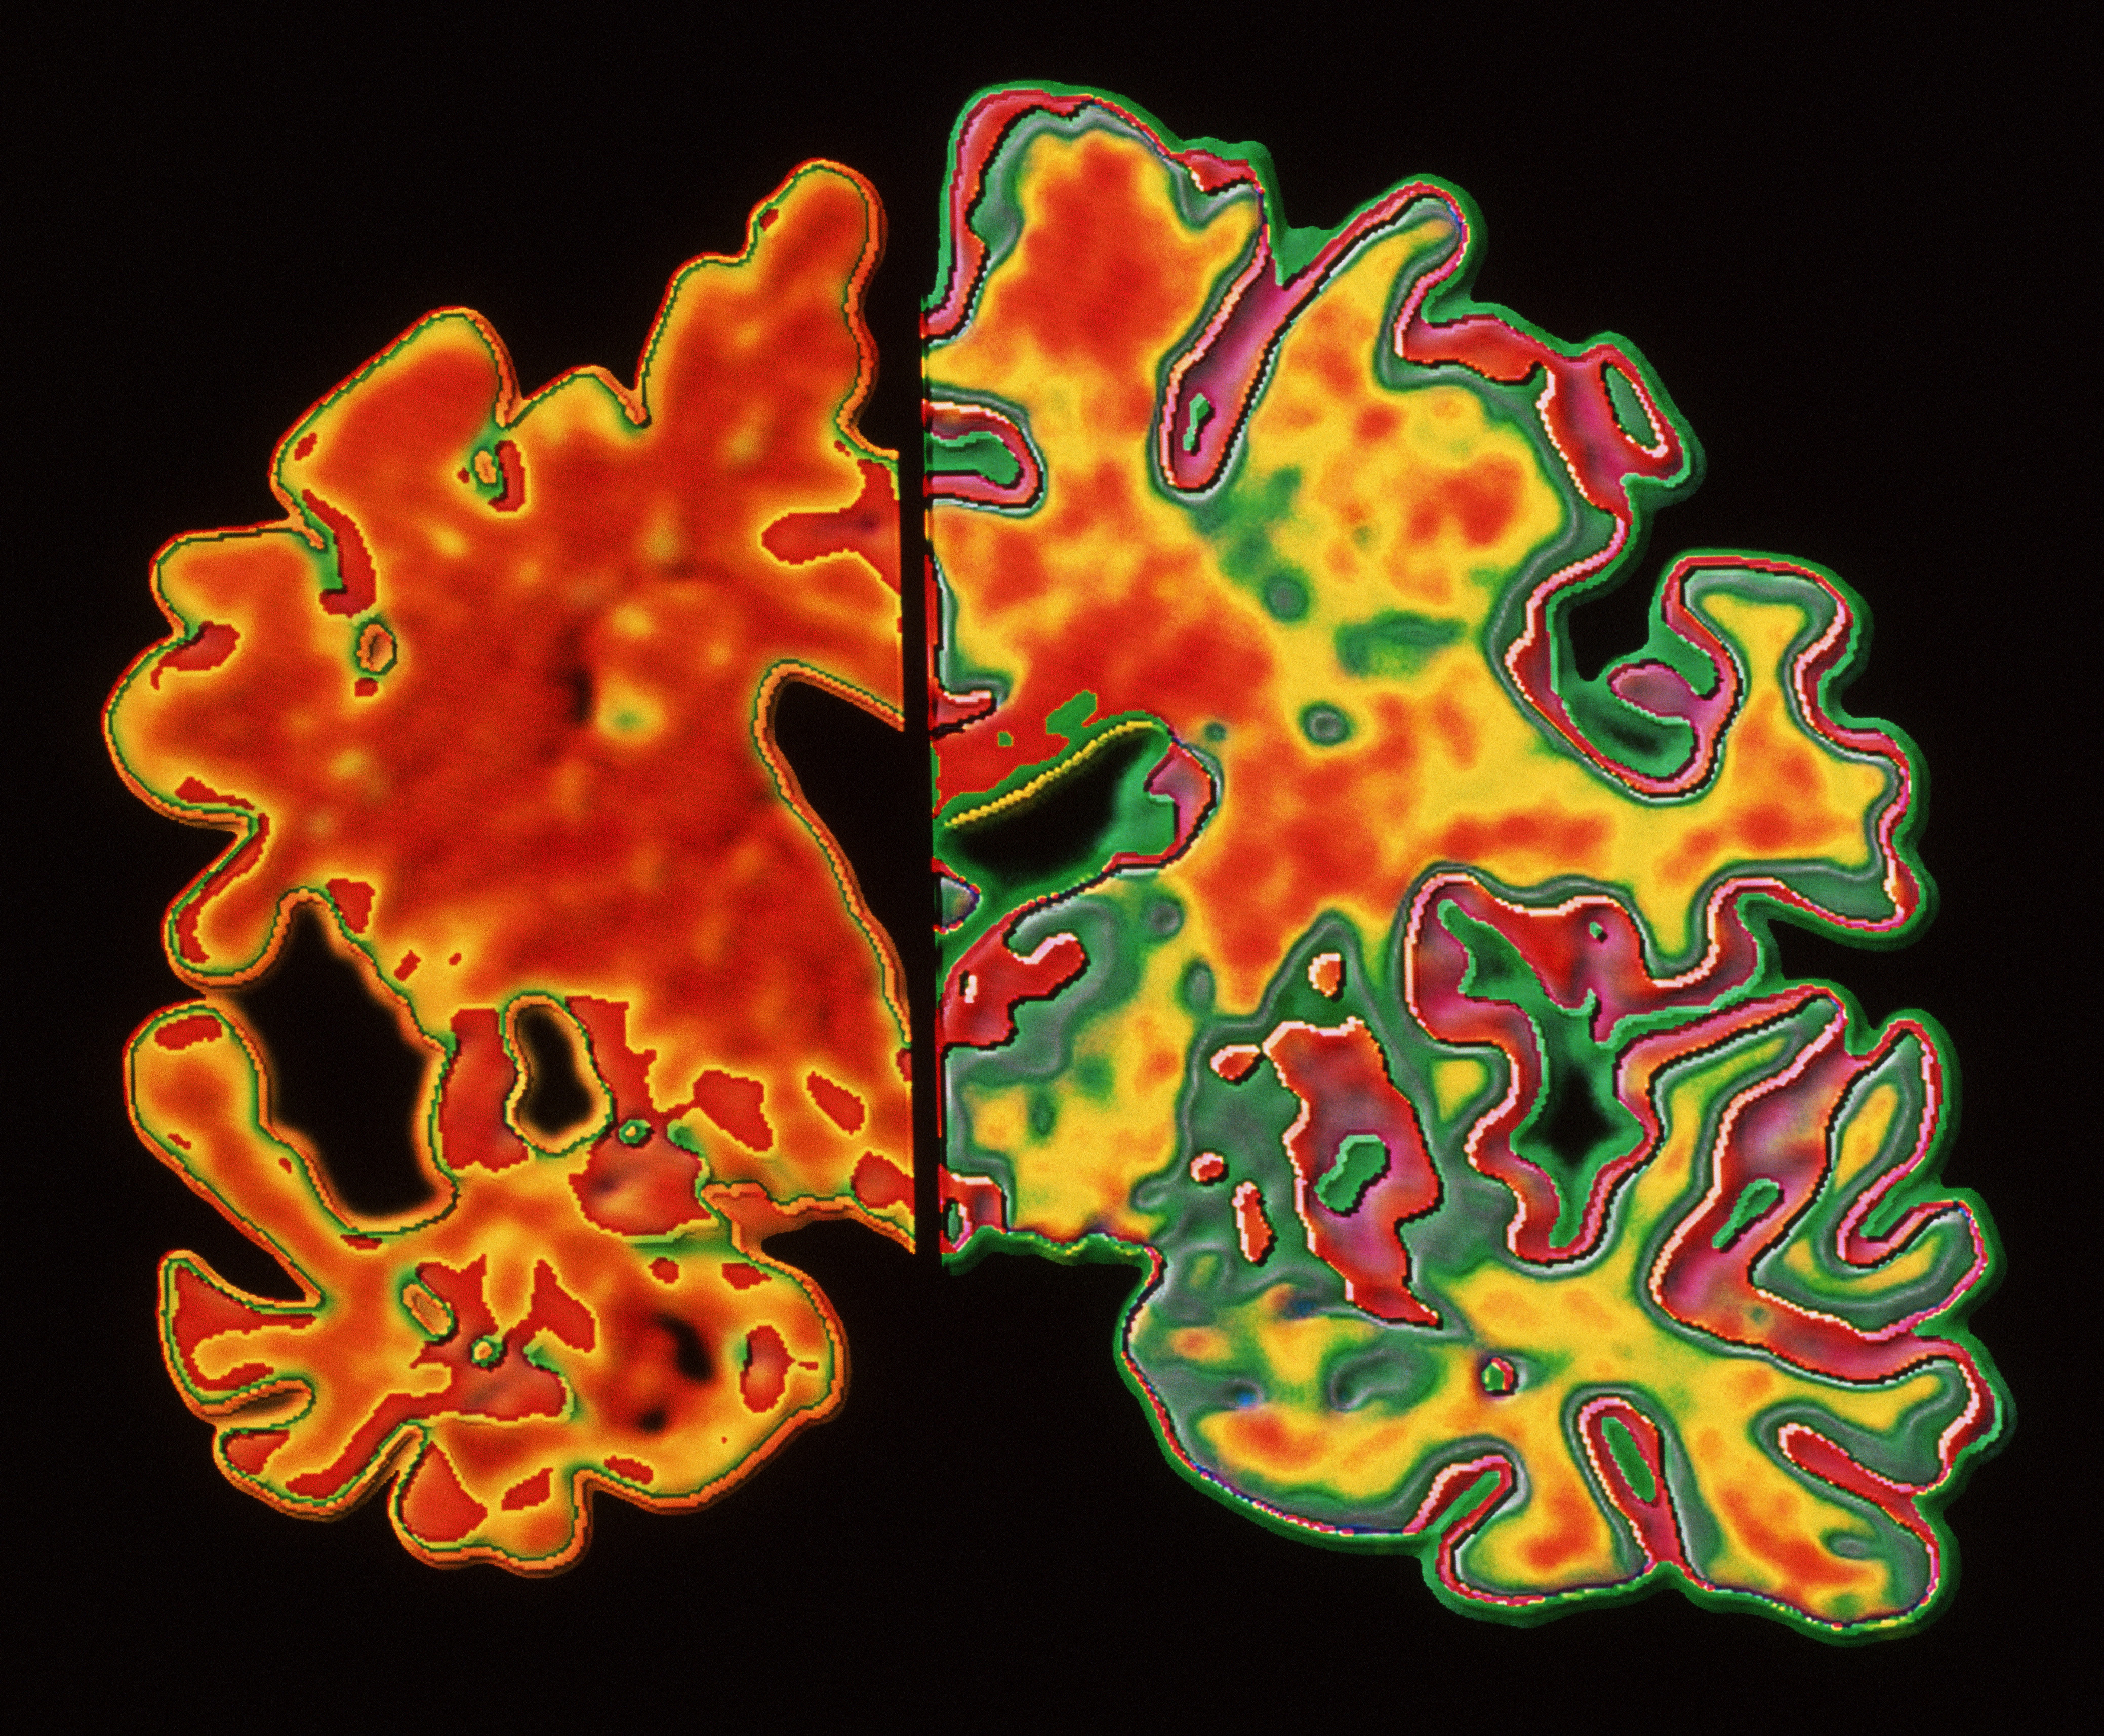 Сравнительные изображения головного мозга пациента с деменцией и пациента без деменции